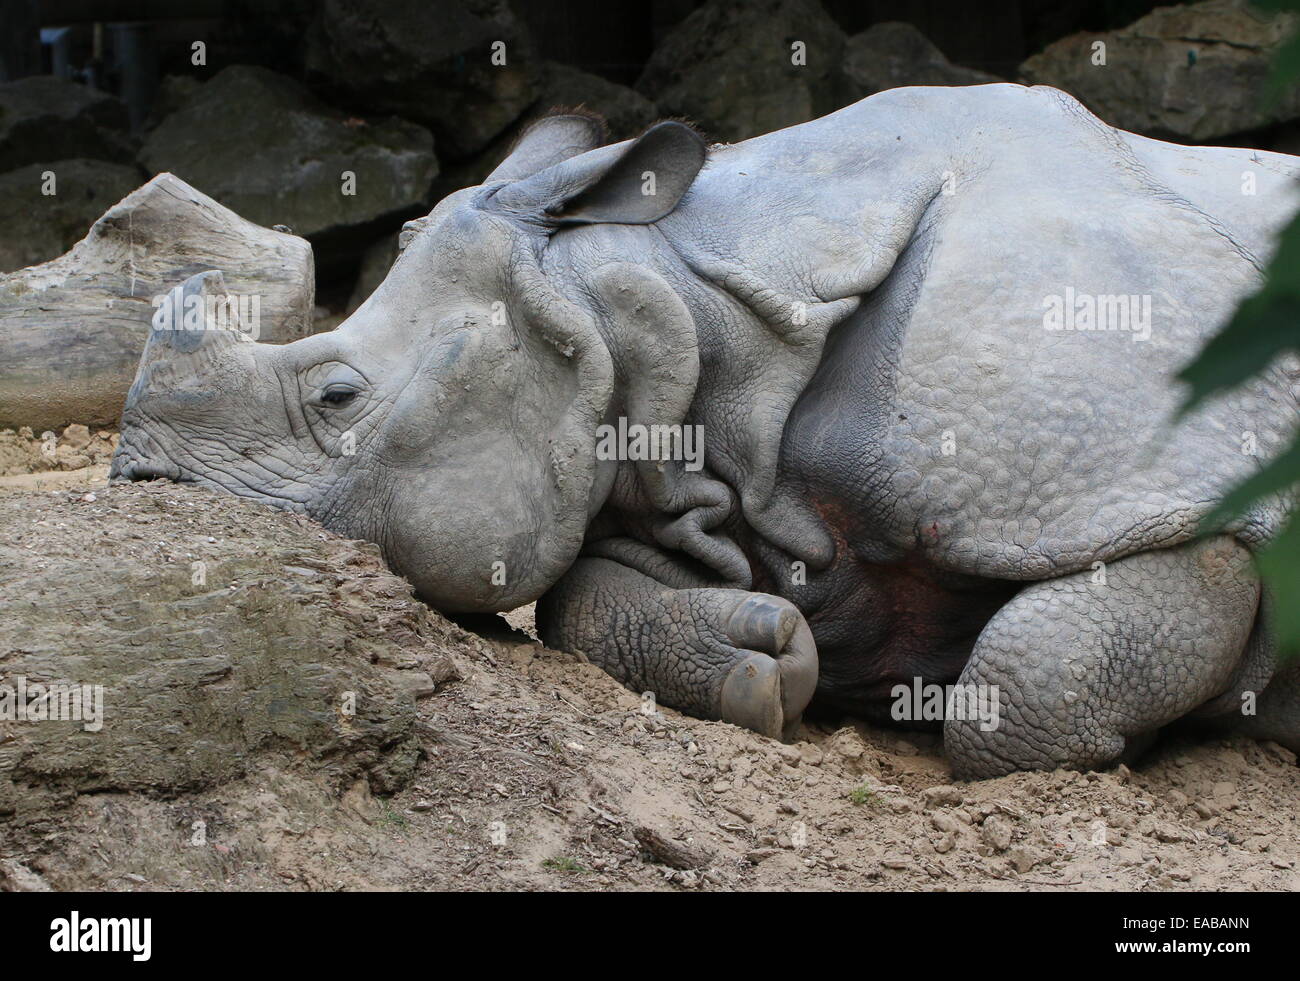 Les Indiens à une corne ( rhinocéros Rhinoceros unicornis) gisant sur le sol Banque D'Images